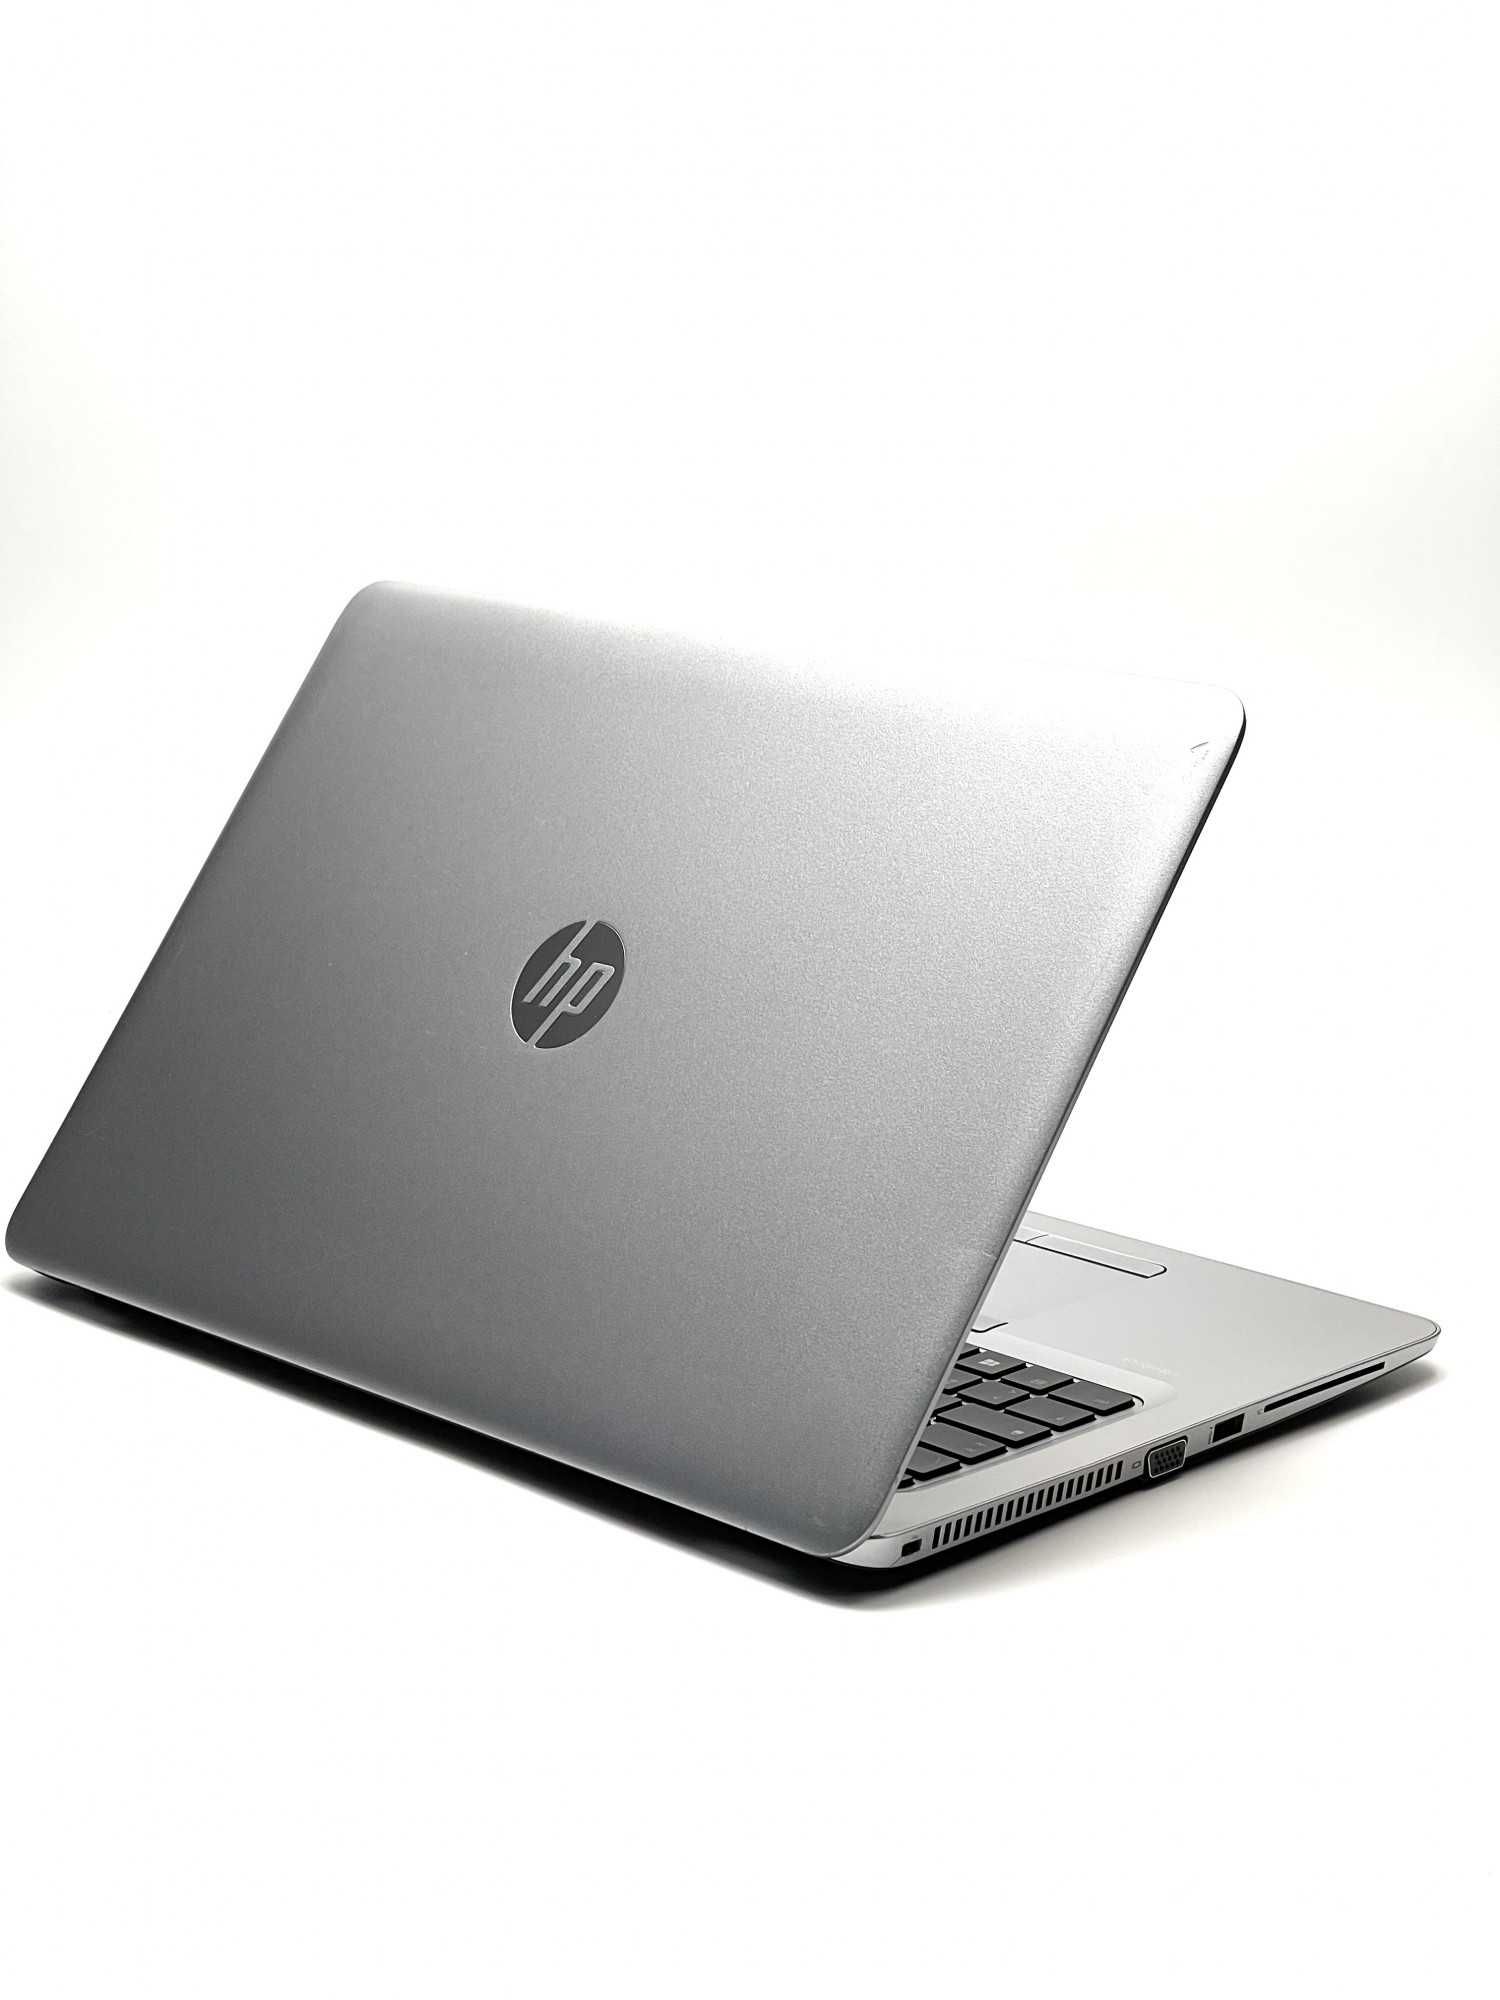 HP EliteBook 850 G3 | 15.6" FHD | i7-6600U 3,4 GHz | AMD Radeon R7